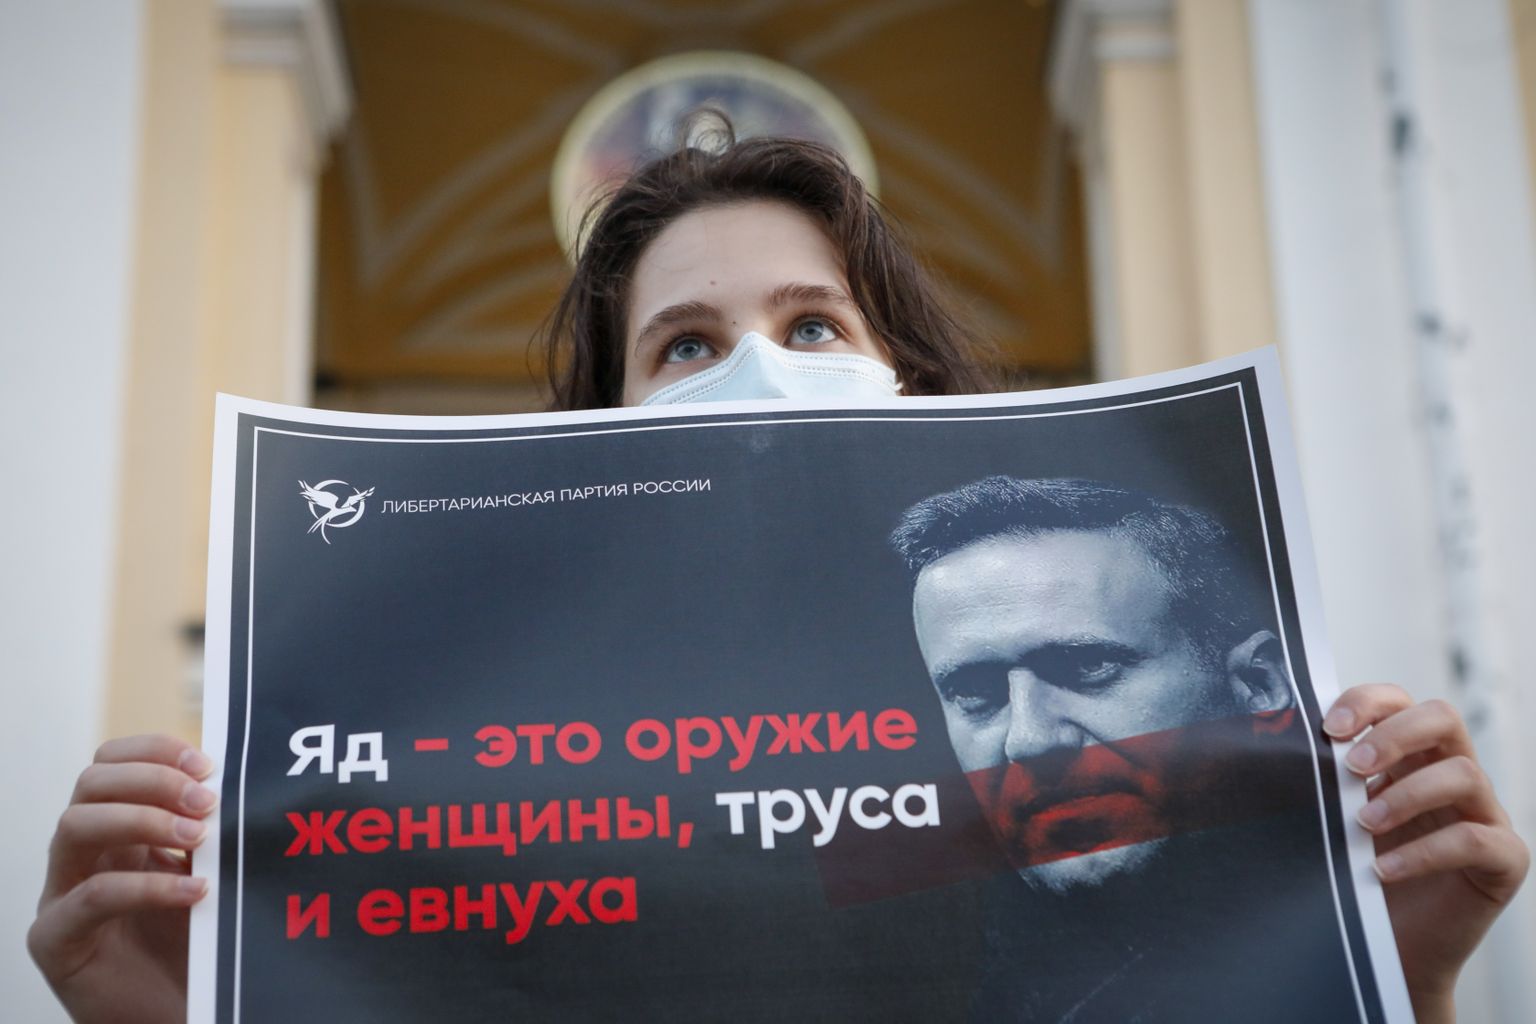 Peterburis neljapäevasel protestil opositsioonipoliitiku Aleksei Navalnõi võimaliku mürgitamise vastu meelt avaldanud naise plakatil seisab kiri: "Mürk on naise, argpüksi ja eunuhhi relv".